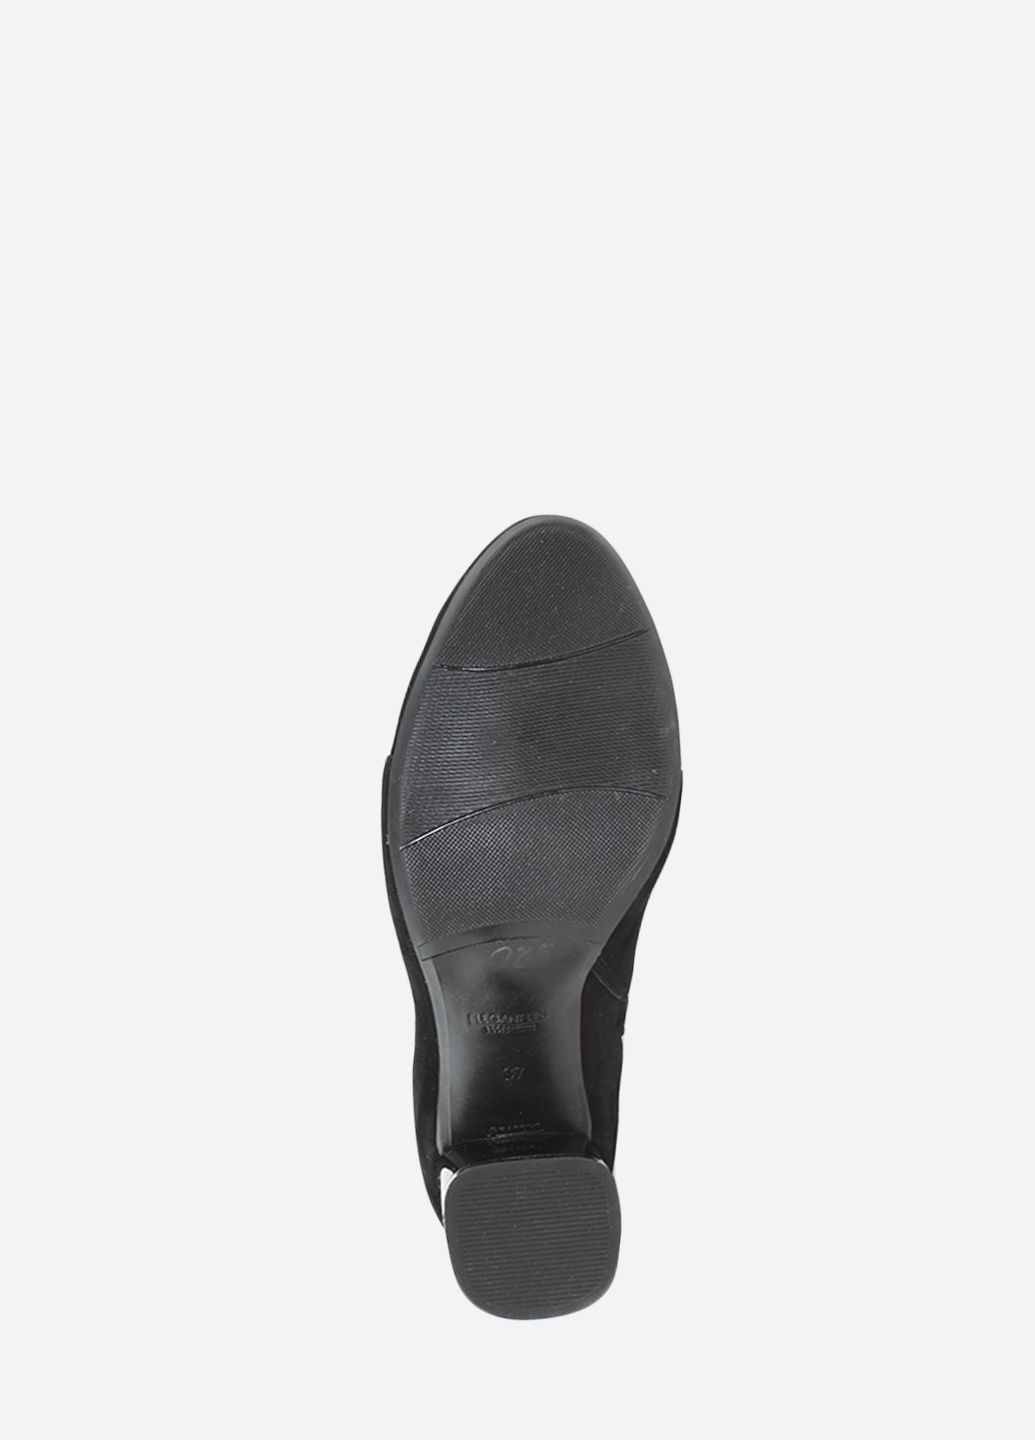 Осенние ботинки rk606-11 черный Kseniya из натуральной замши